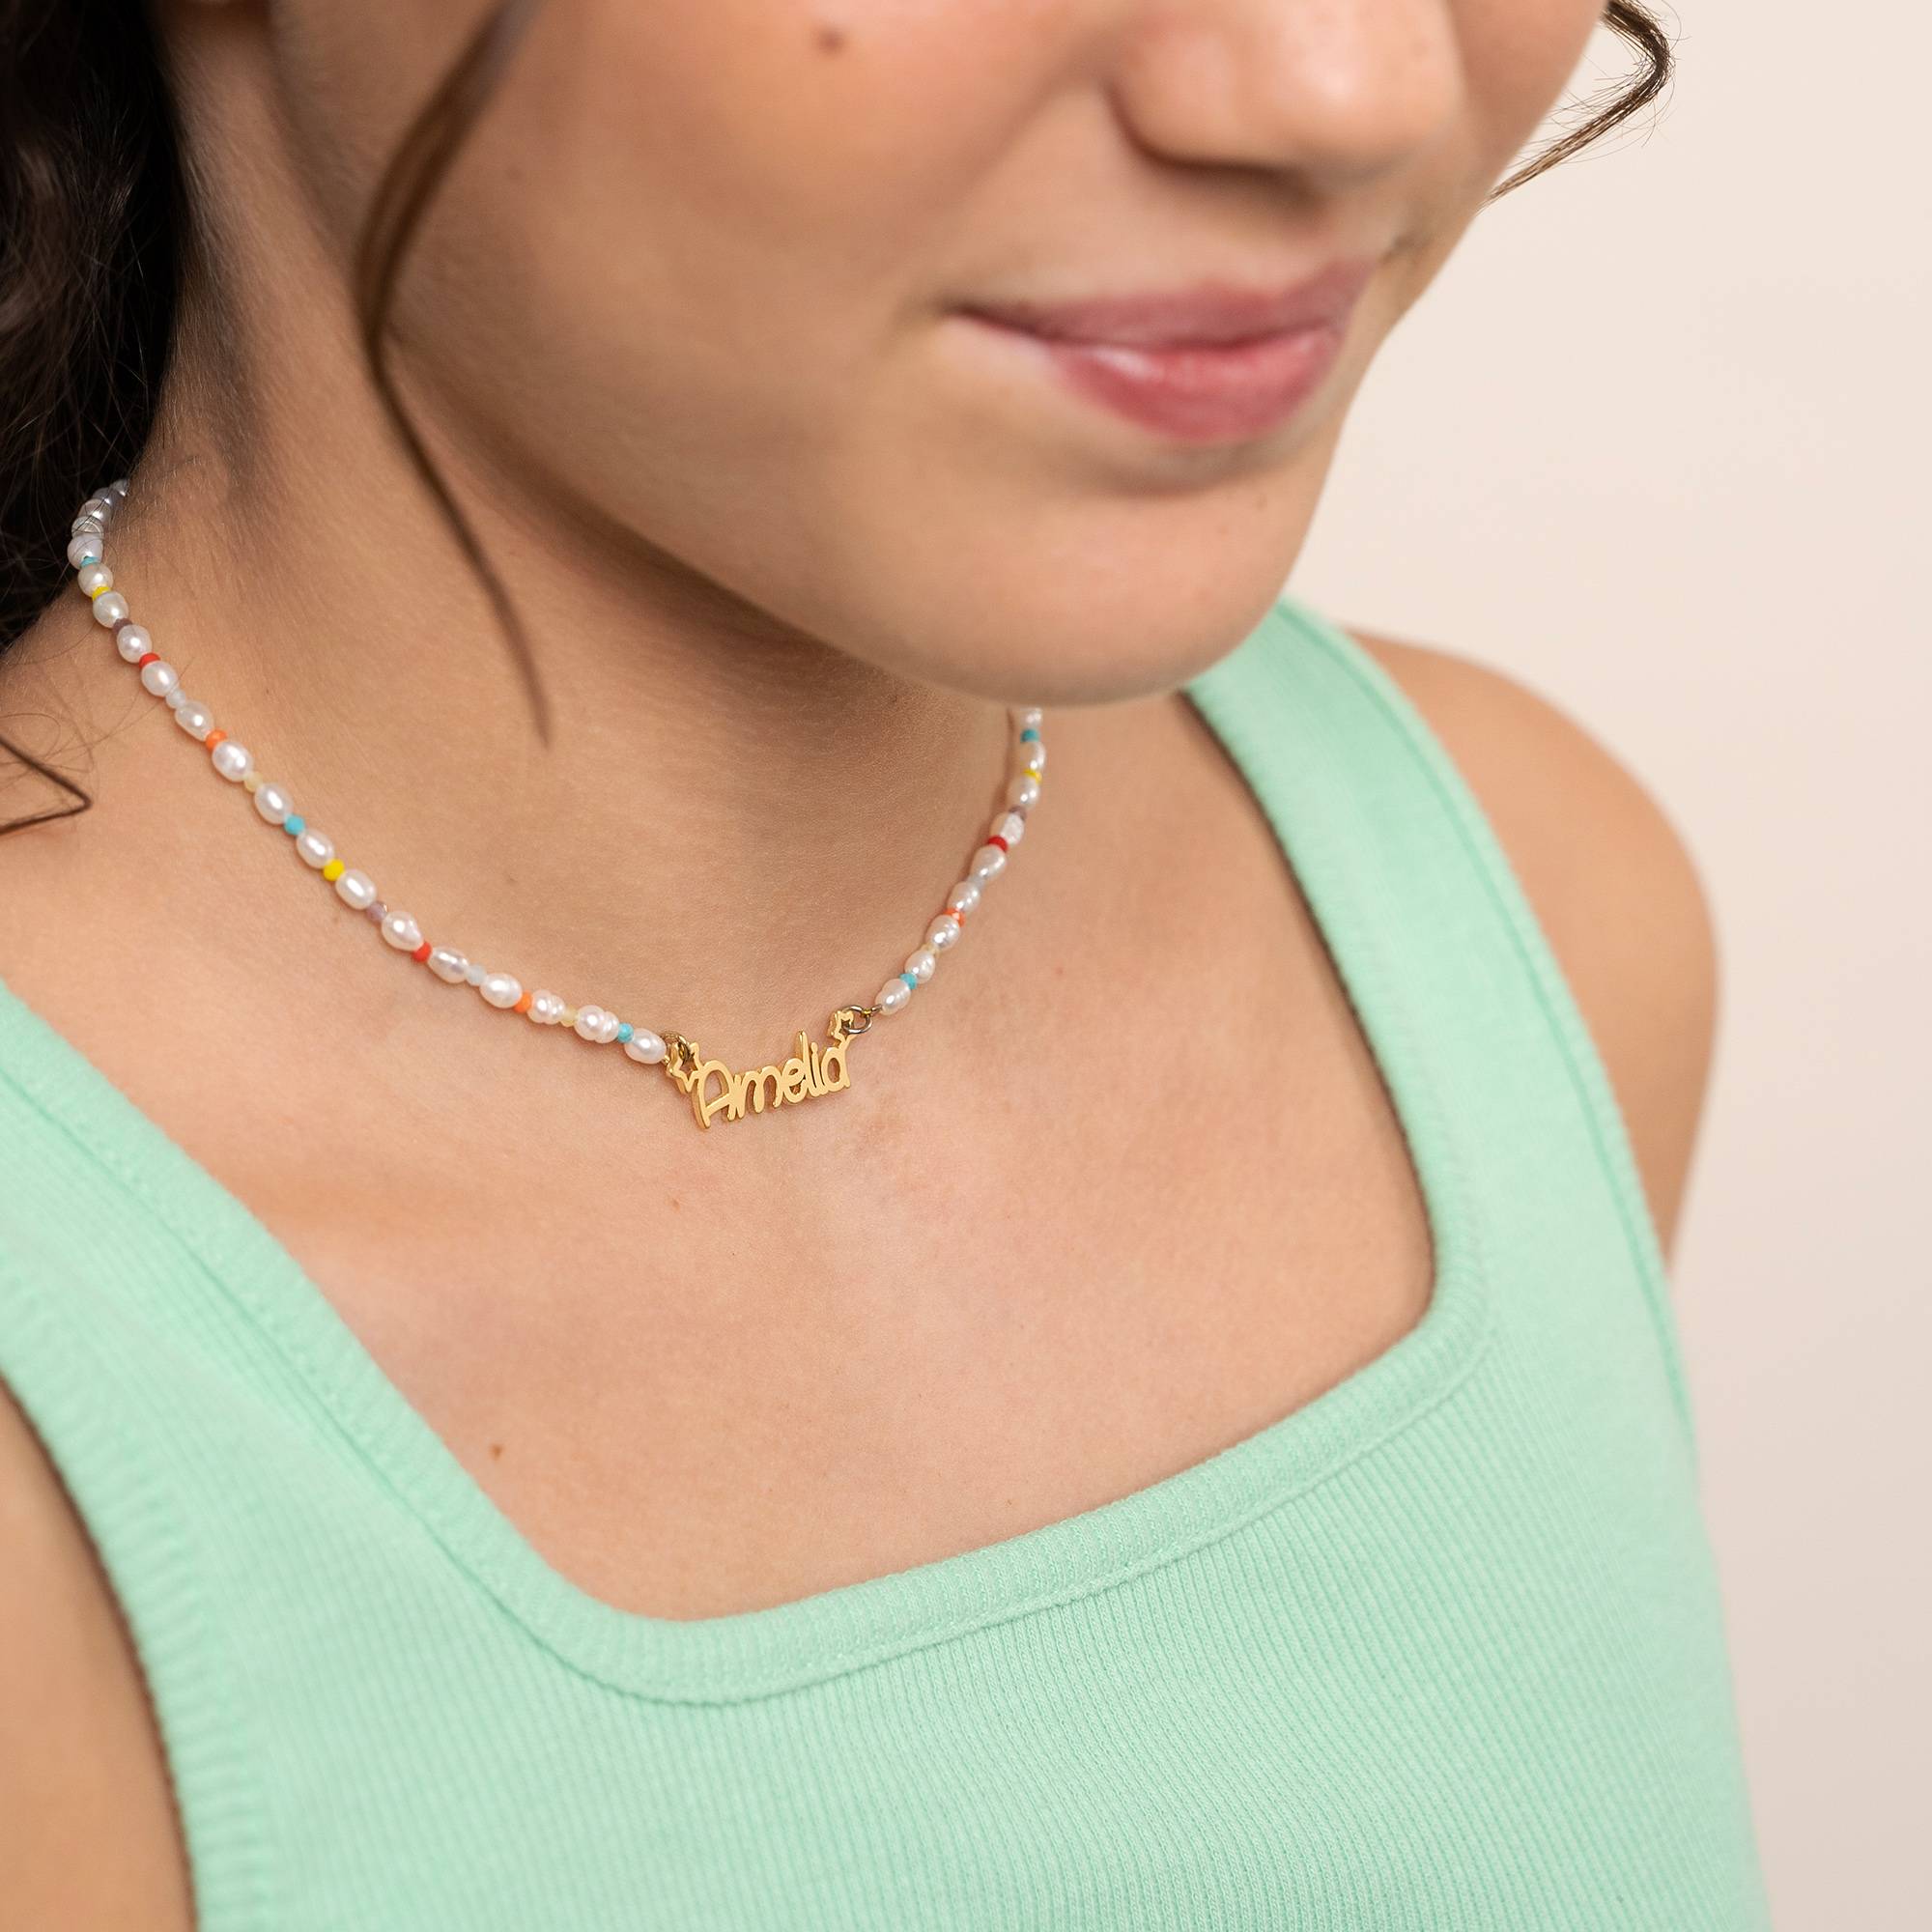 Perlehalskæde til piger med navn - forgyldt-4 produkt billede